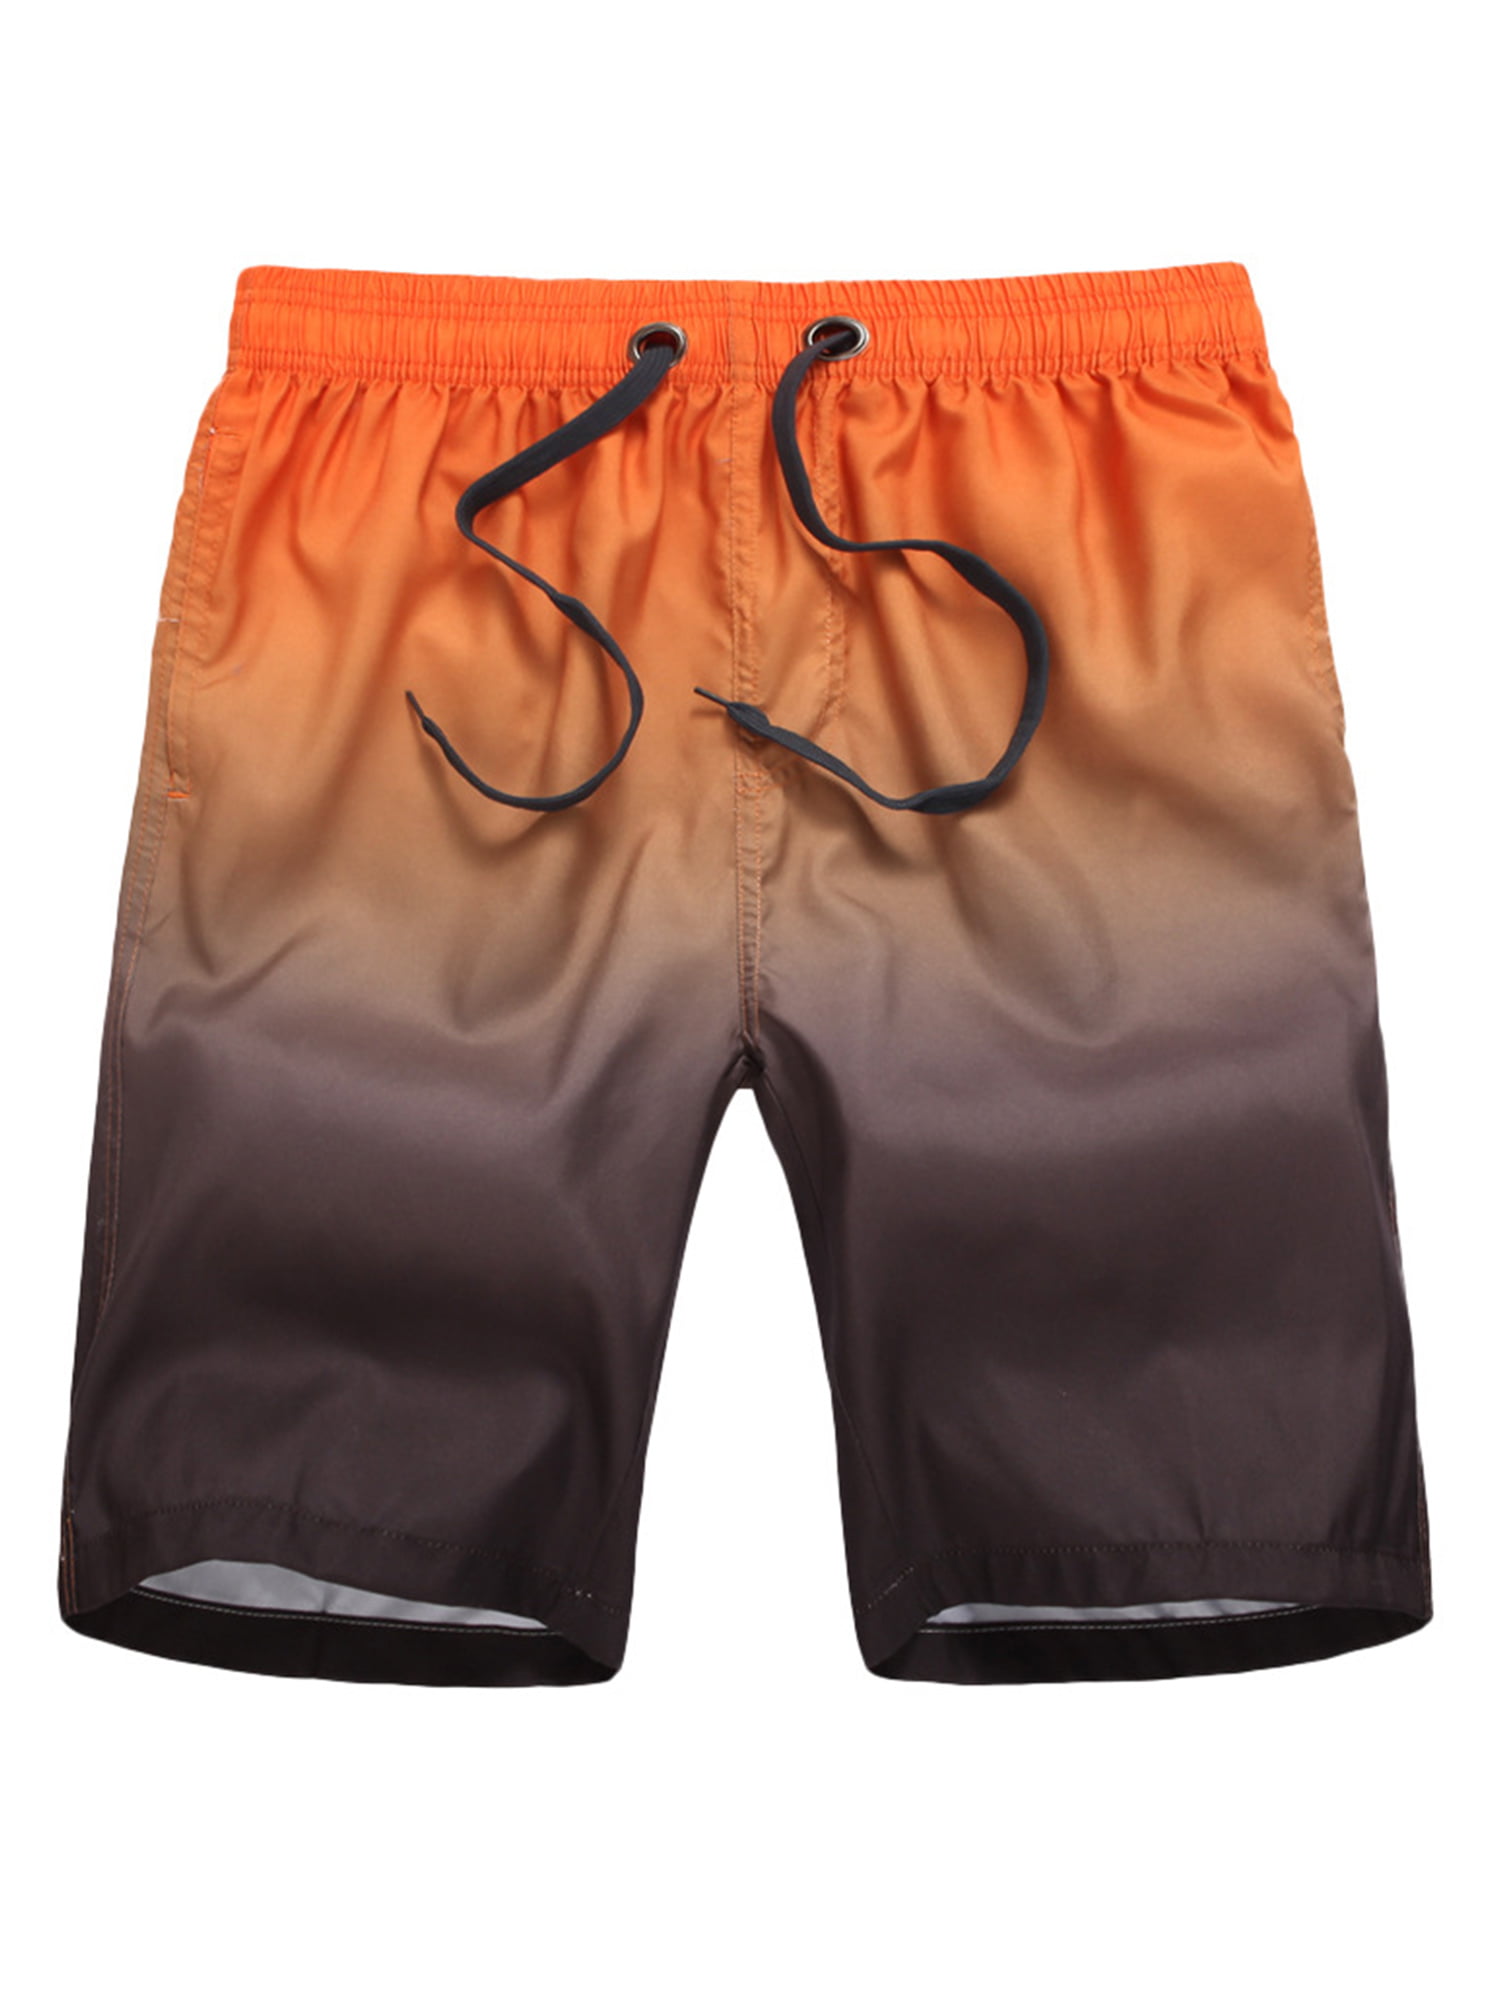 Coolred-Men Relaxed-Fit Tribal Harem Print Linen Over Sized Swim Shorts Trunks 